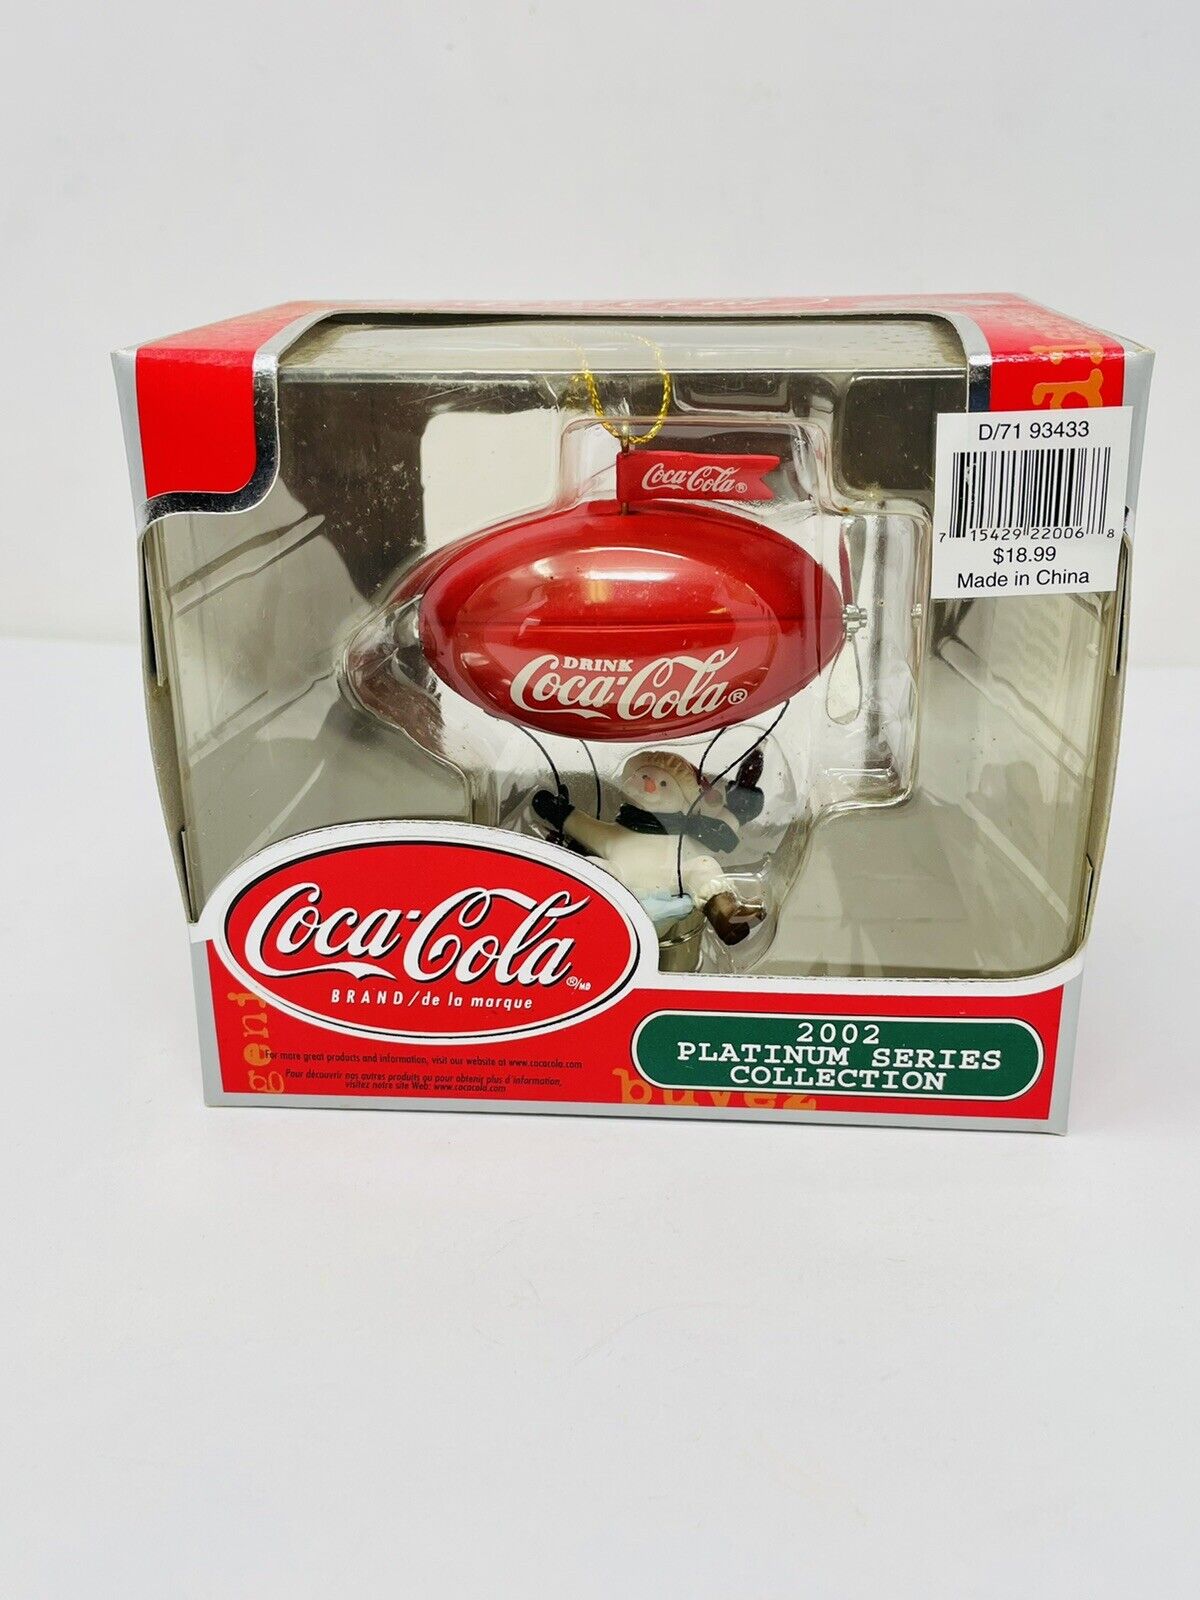 Coca Cola 2002 Platinum Series Collection Christmas Ornament SNOWMAN Blimp NOS